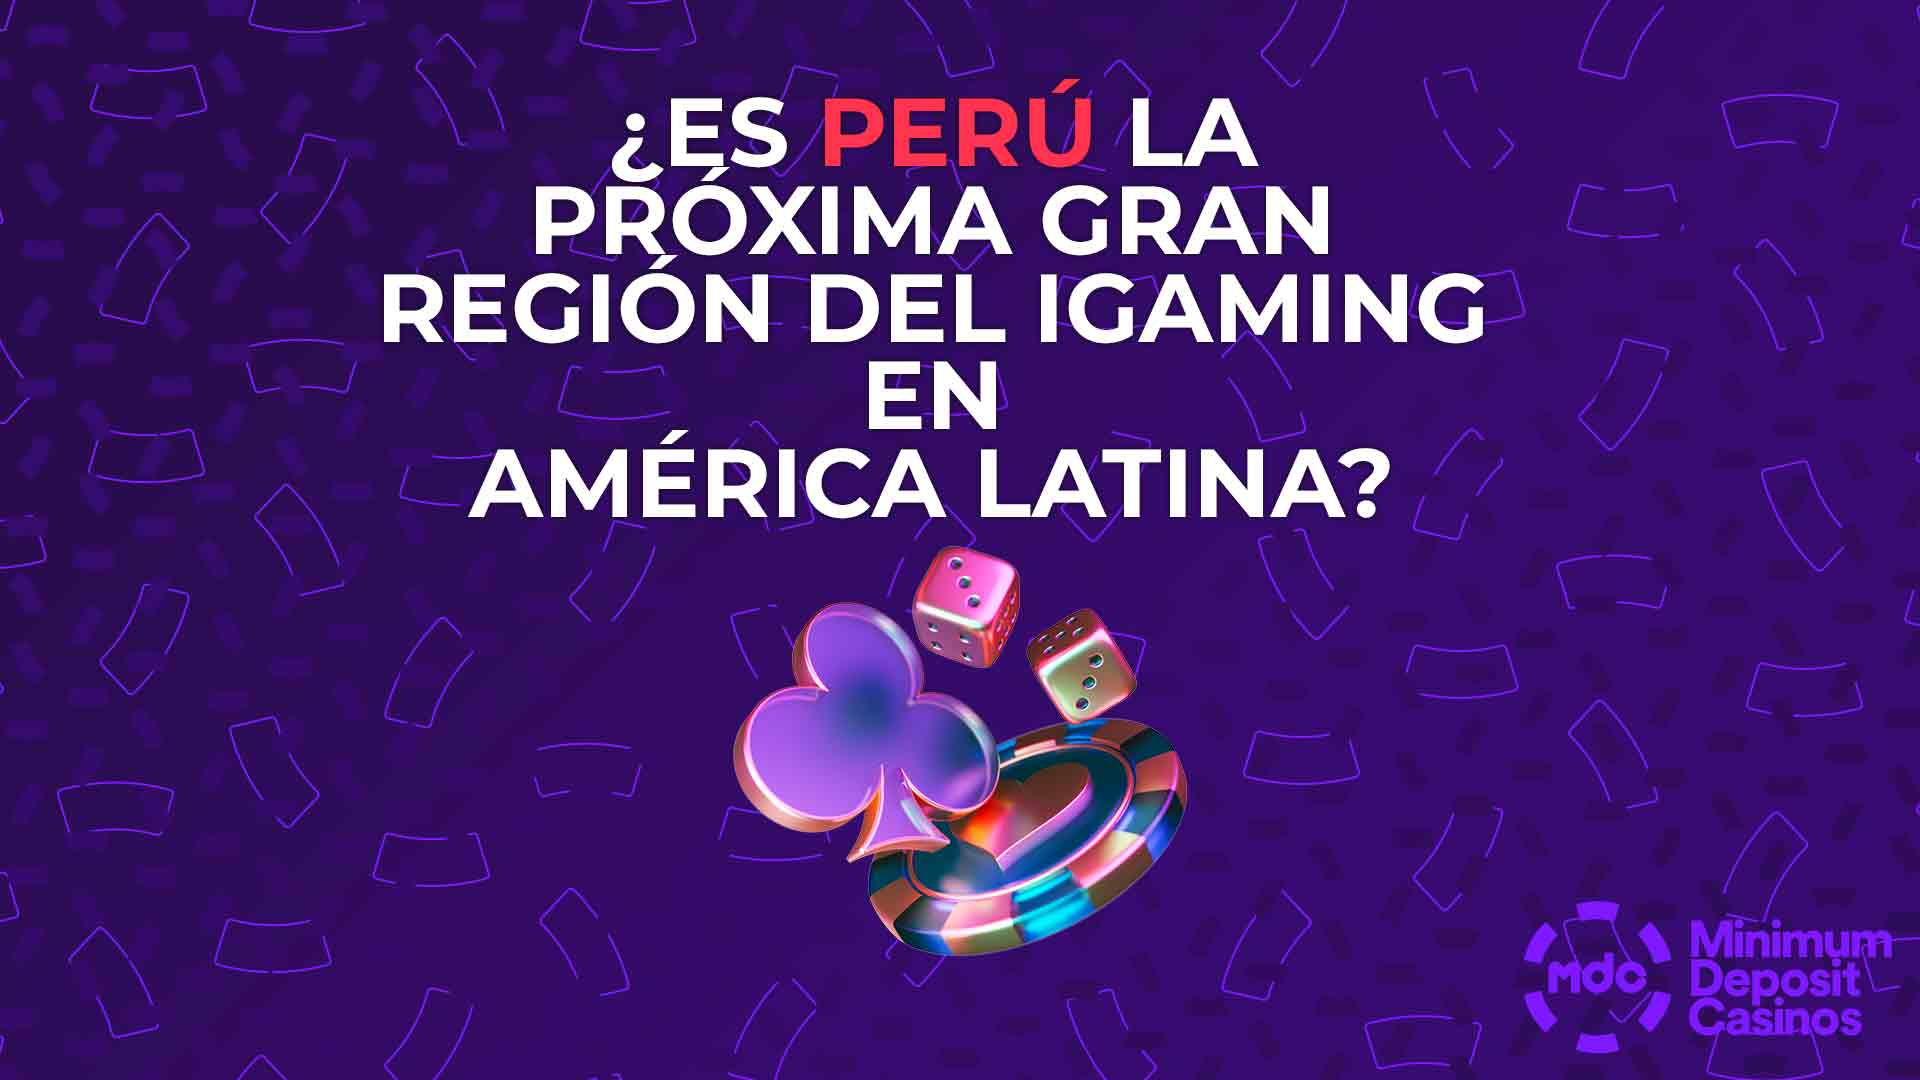 ¿Es Perú la próxima gran región del iGaming en América Latina?